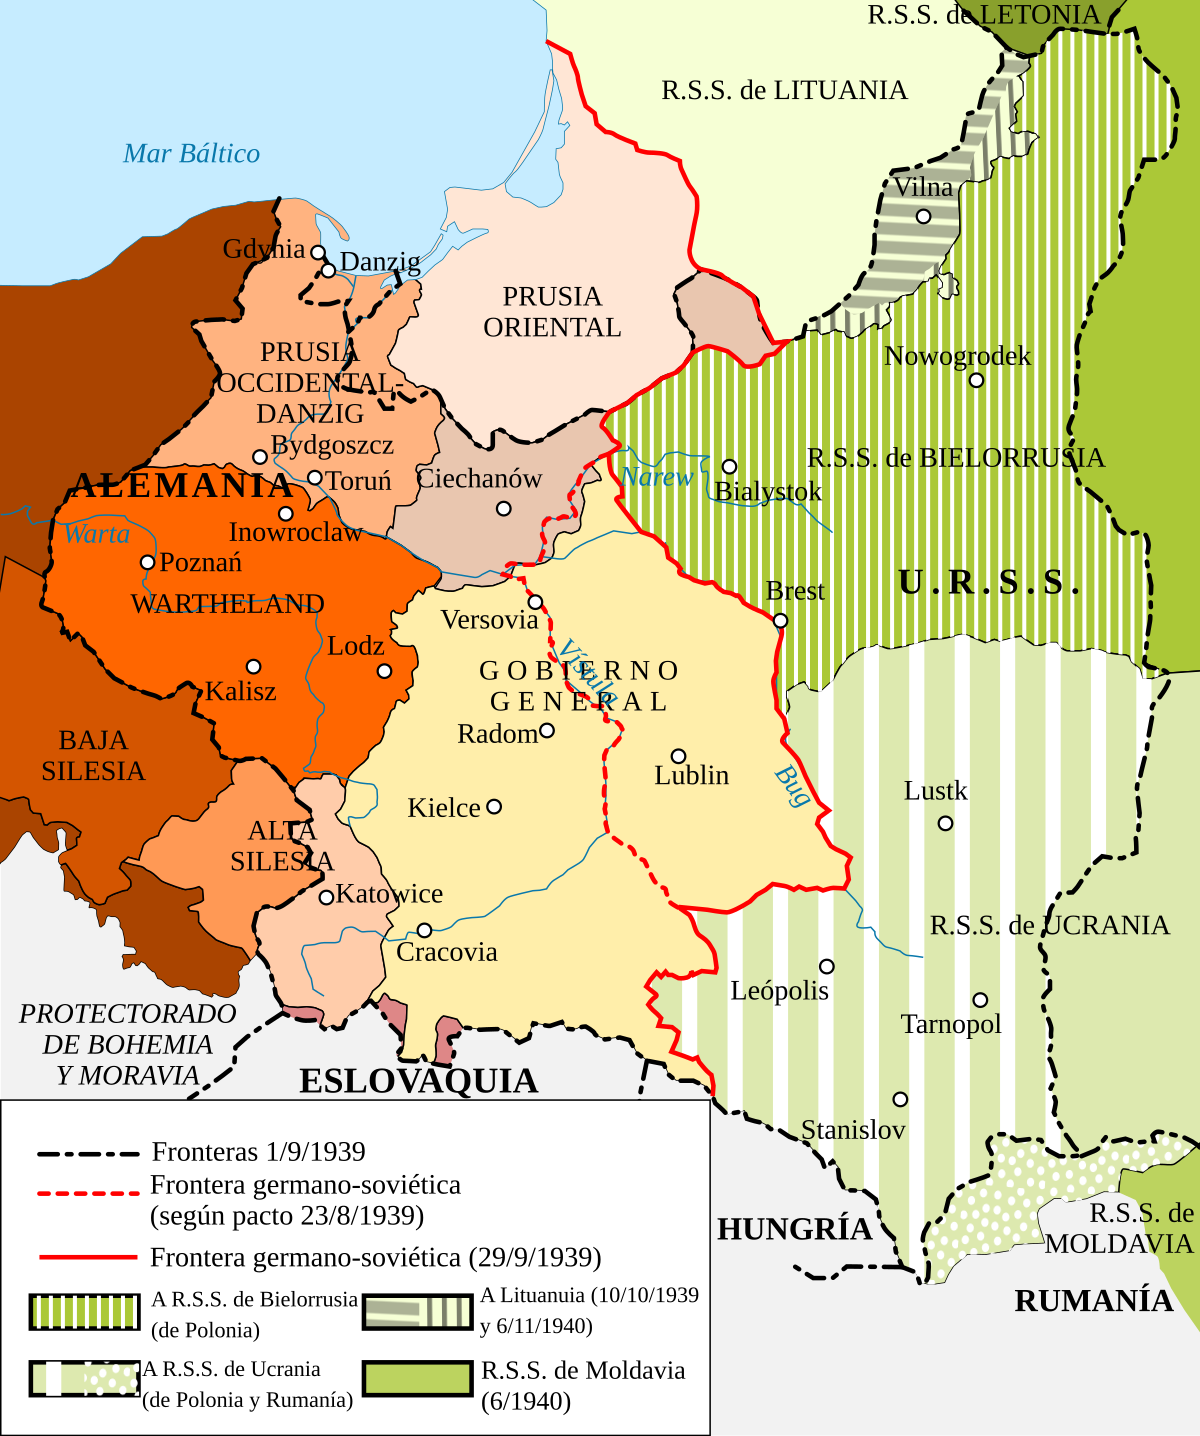 Territorios polacos anexionados por la Alemania nazi - Wikipedia, la  enciclopedia libre